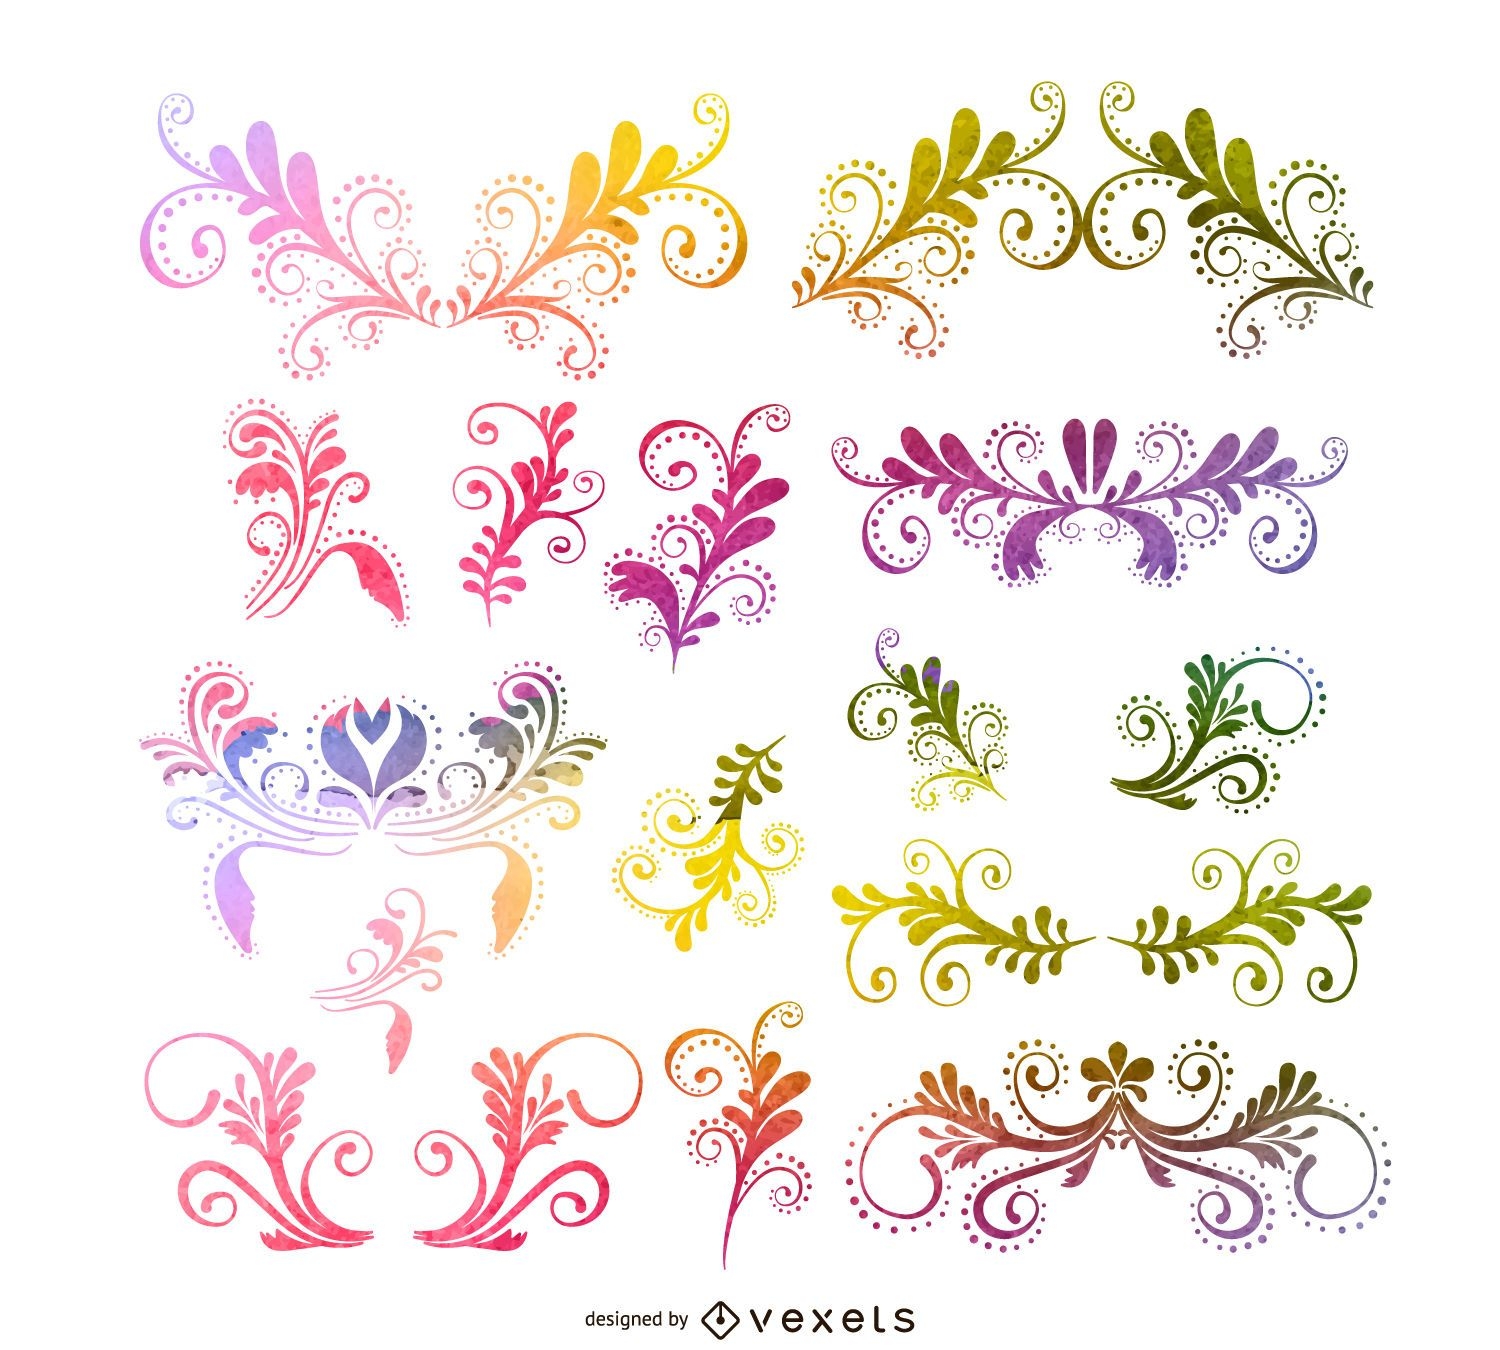 Ornamental floral swirls set